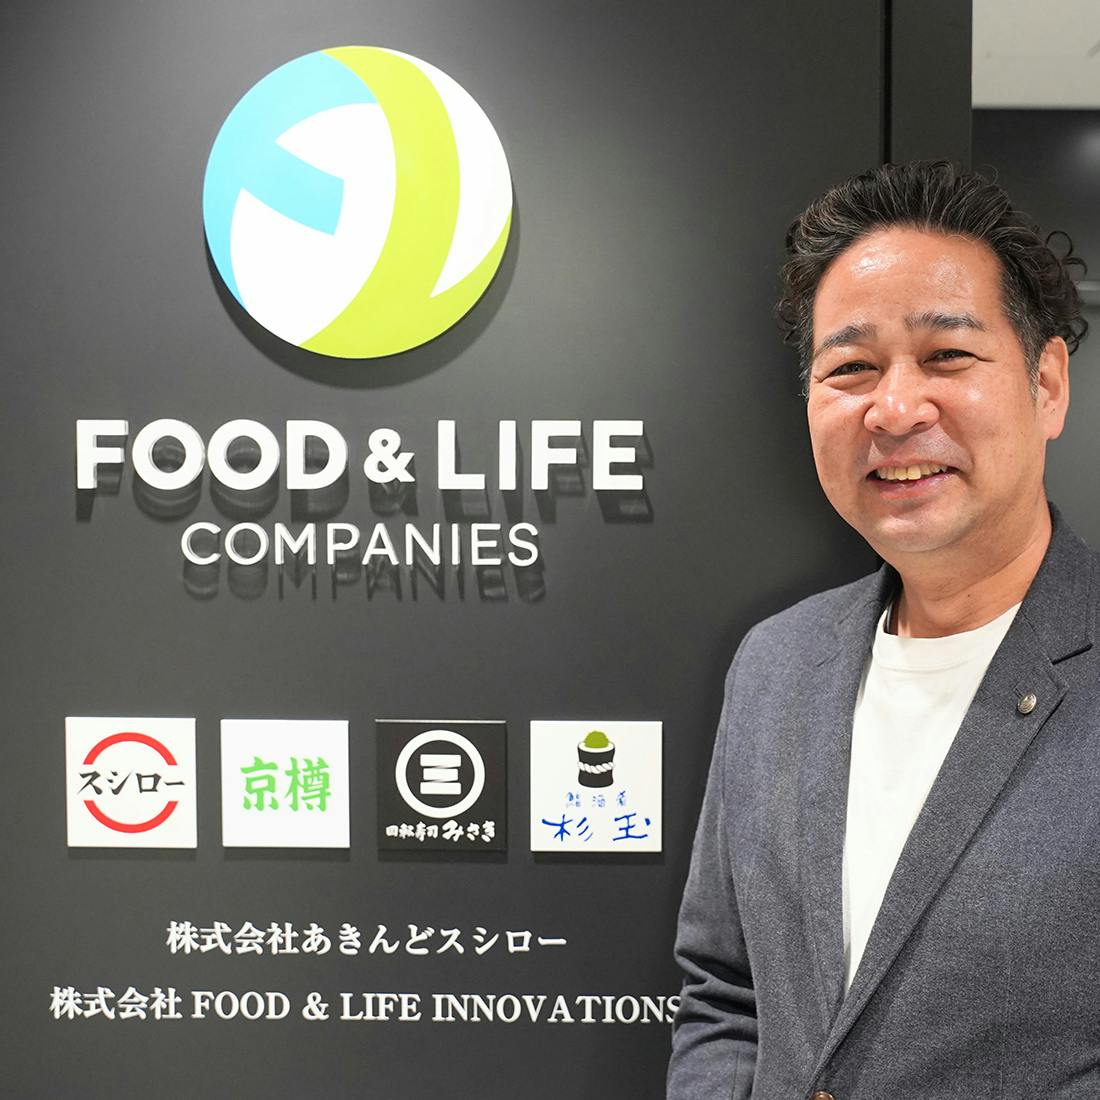 株式会社FOOD & LIFE INNOVATIONS
代表取締役社長 堀江陽